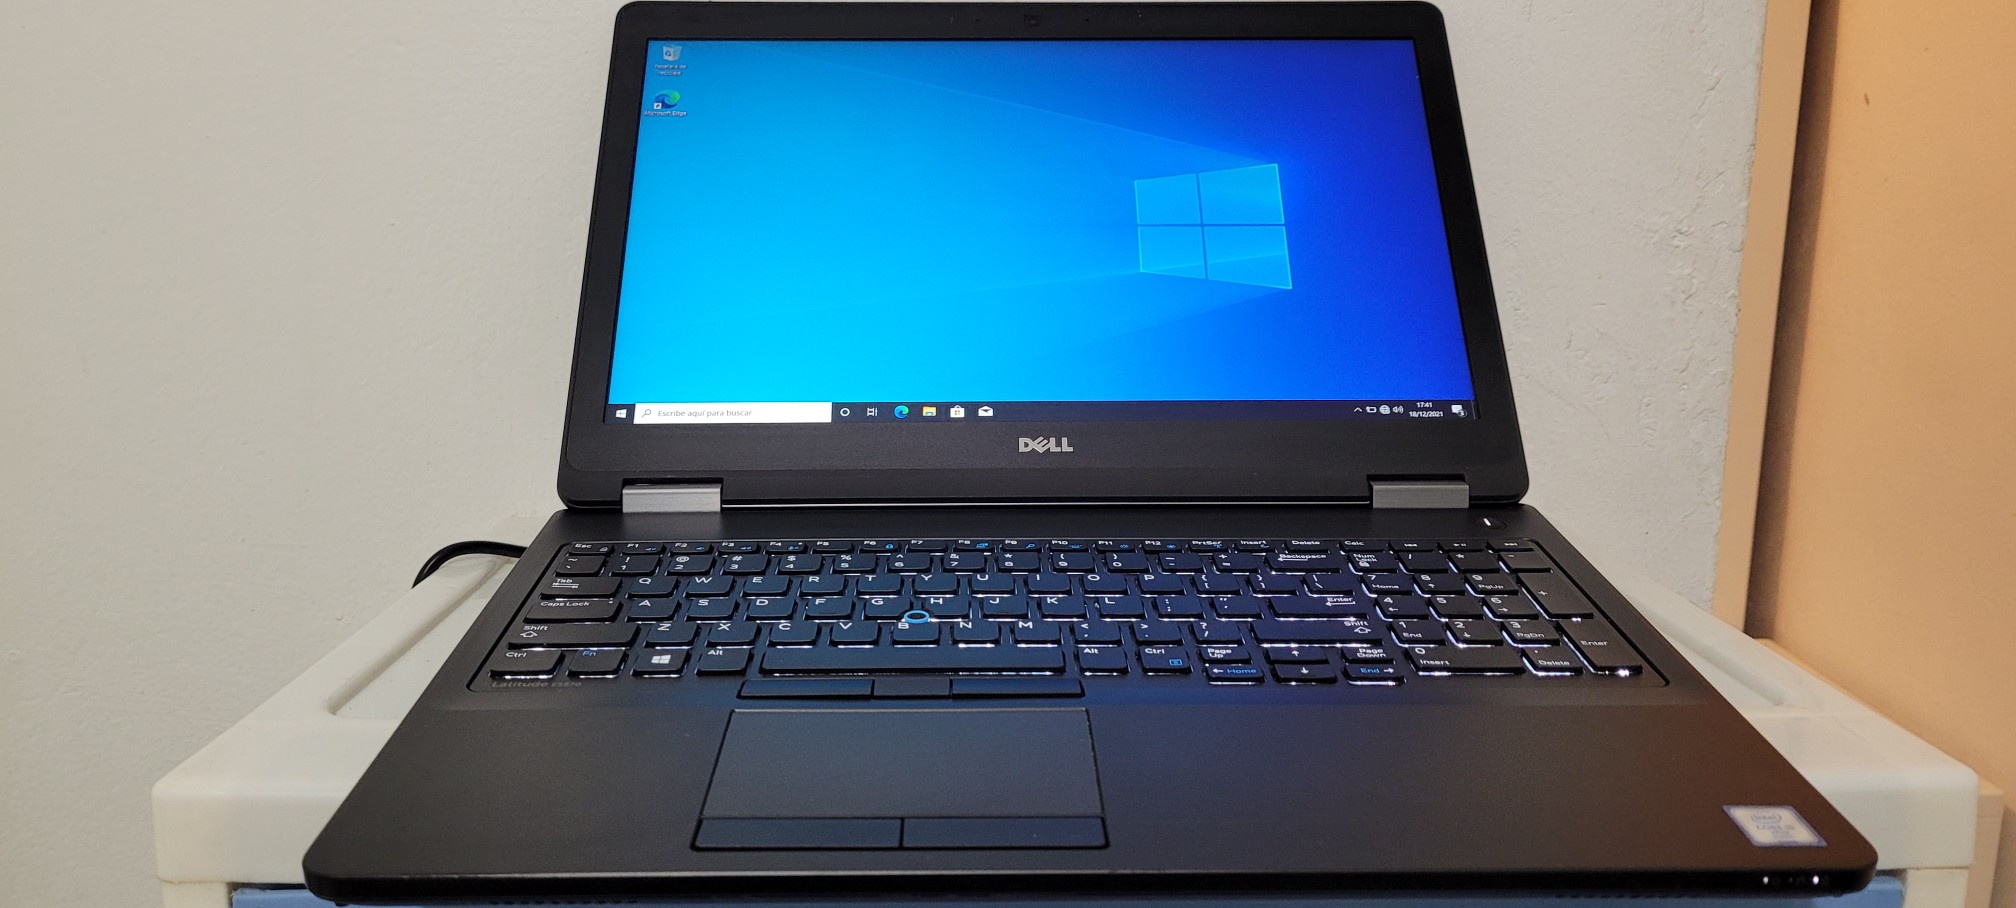 computadoras y laptops - Nueva Dell 5570 17 Pulg Core i7 6ta Gen Ram 16gb Disco 512gb SSD Video 8gb 0